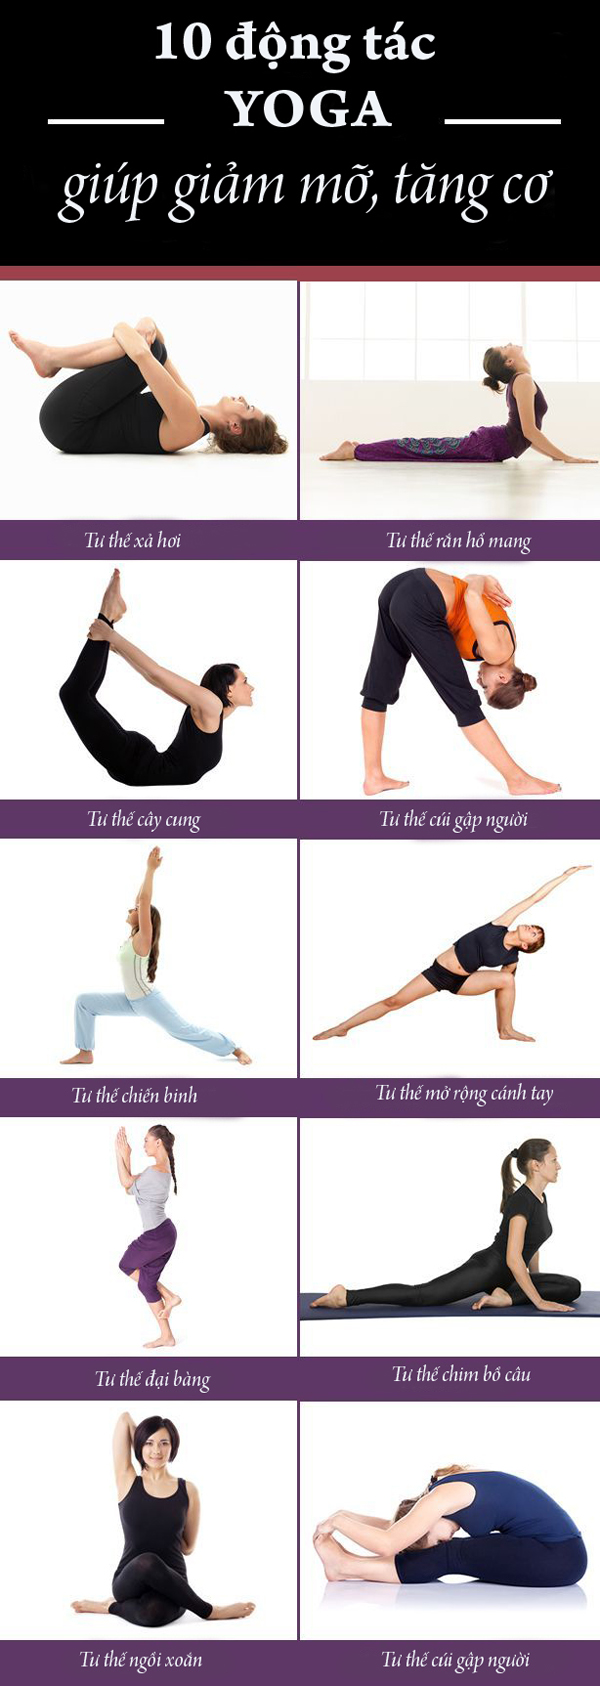 10 động tác yoga giúp giảm mỡ, tăng cơ cho người mới bắt đầu - Ảnh 1